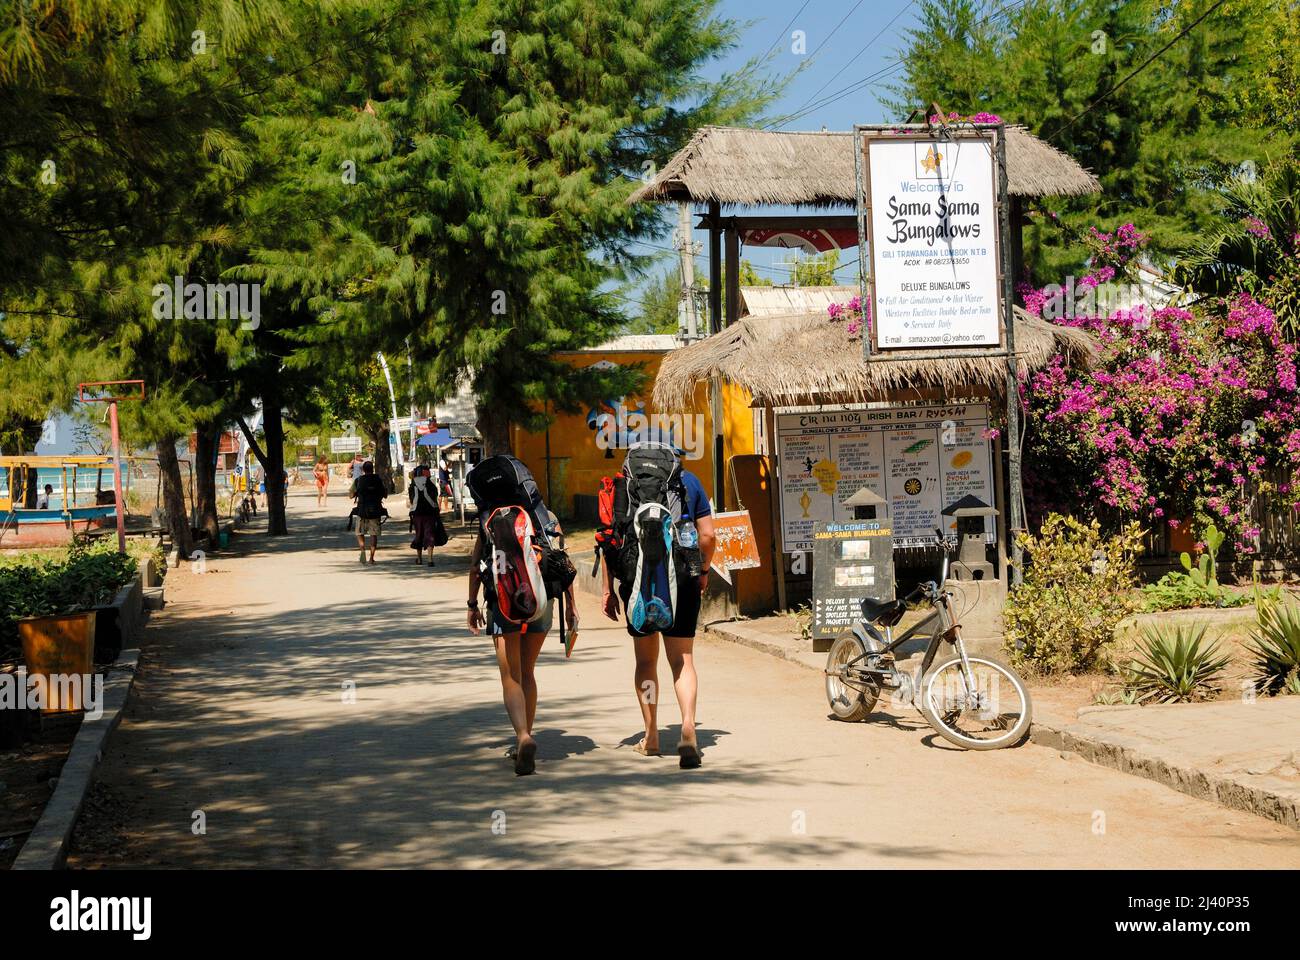 Las mochilas buscan alojamiento en Gili Trawangan, que no tiene coches. Foto de stock